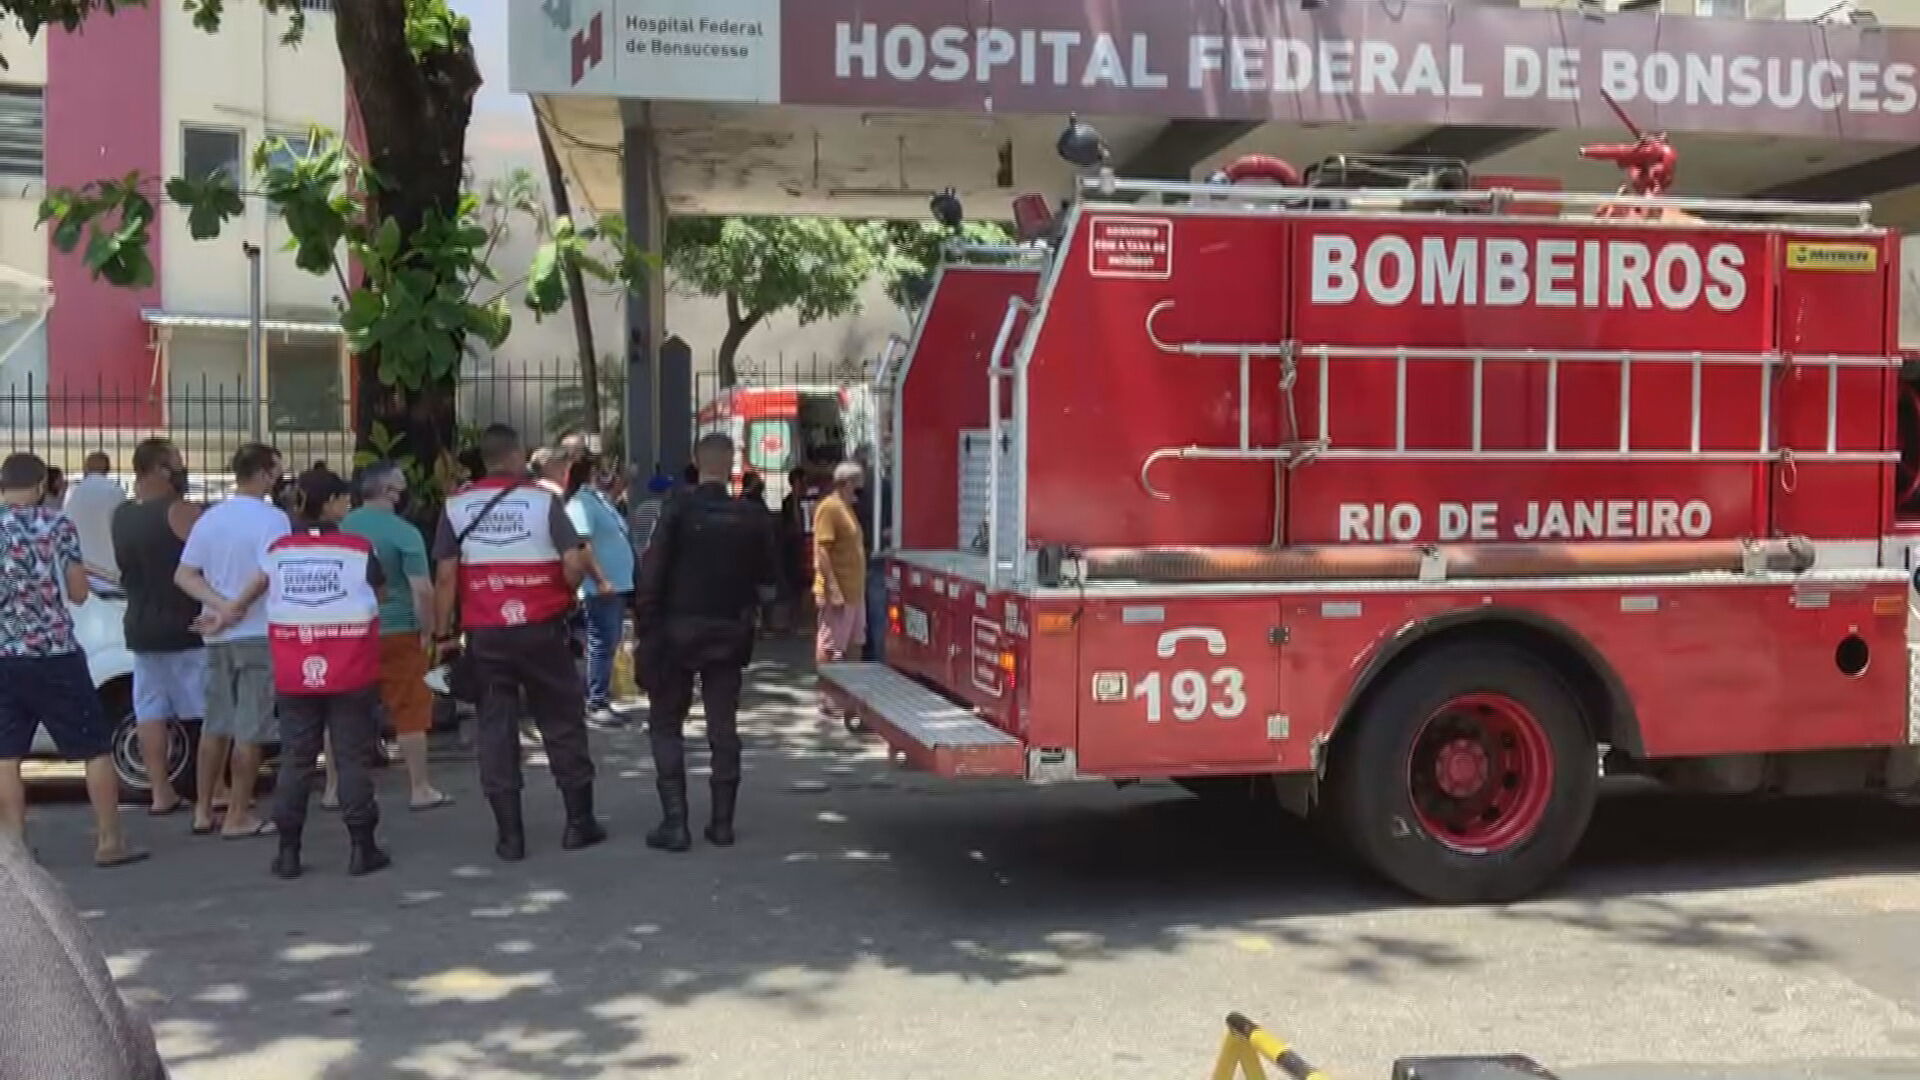 Bombeiros no local do incêndio em hospital no Rio